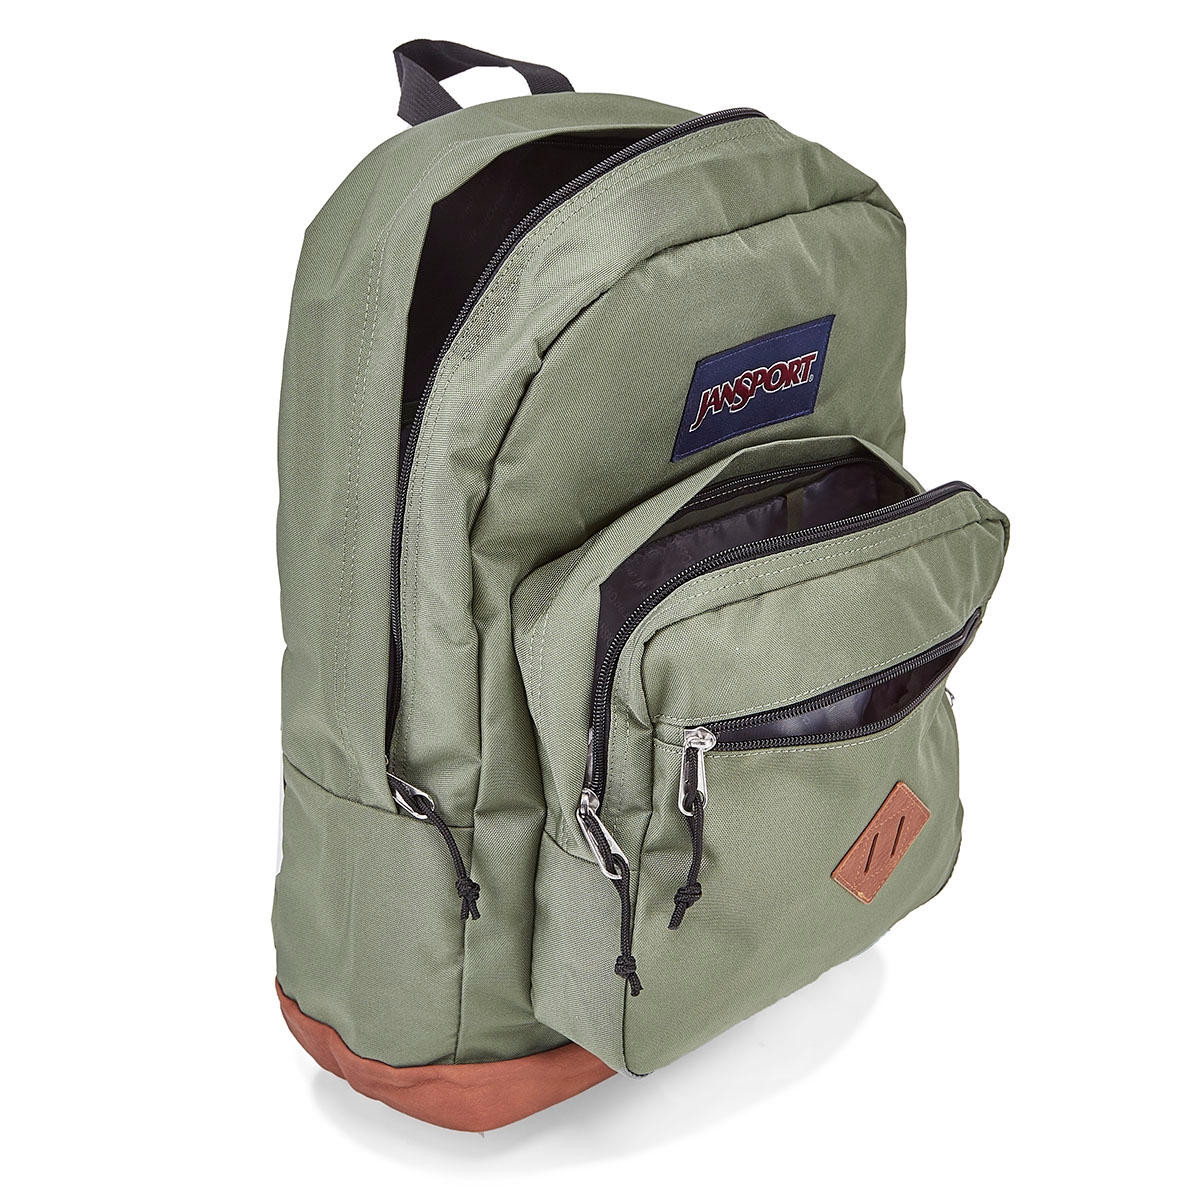 hunter green jansport backpack